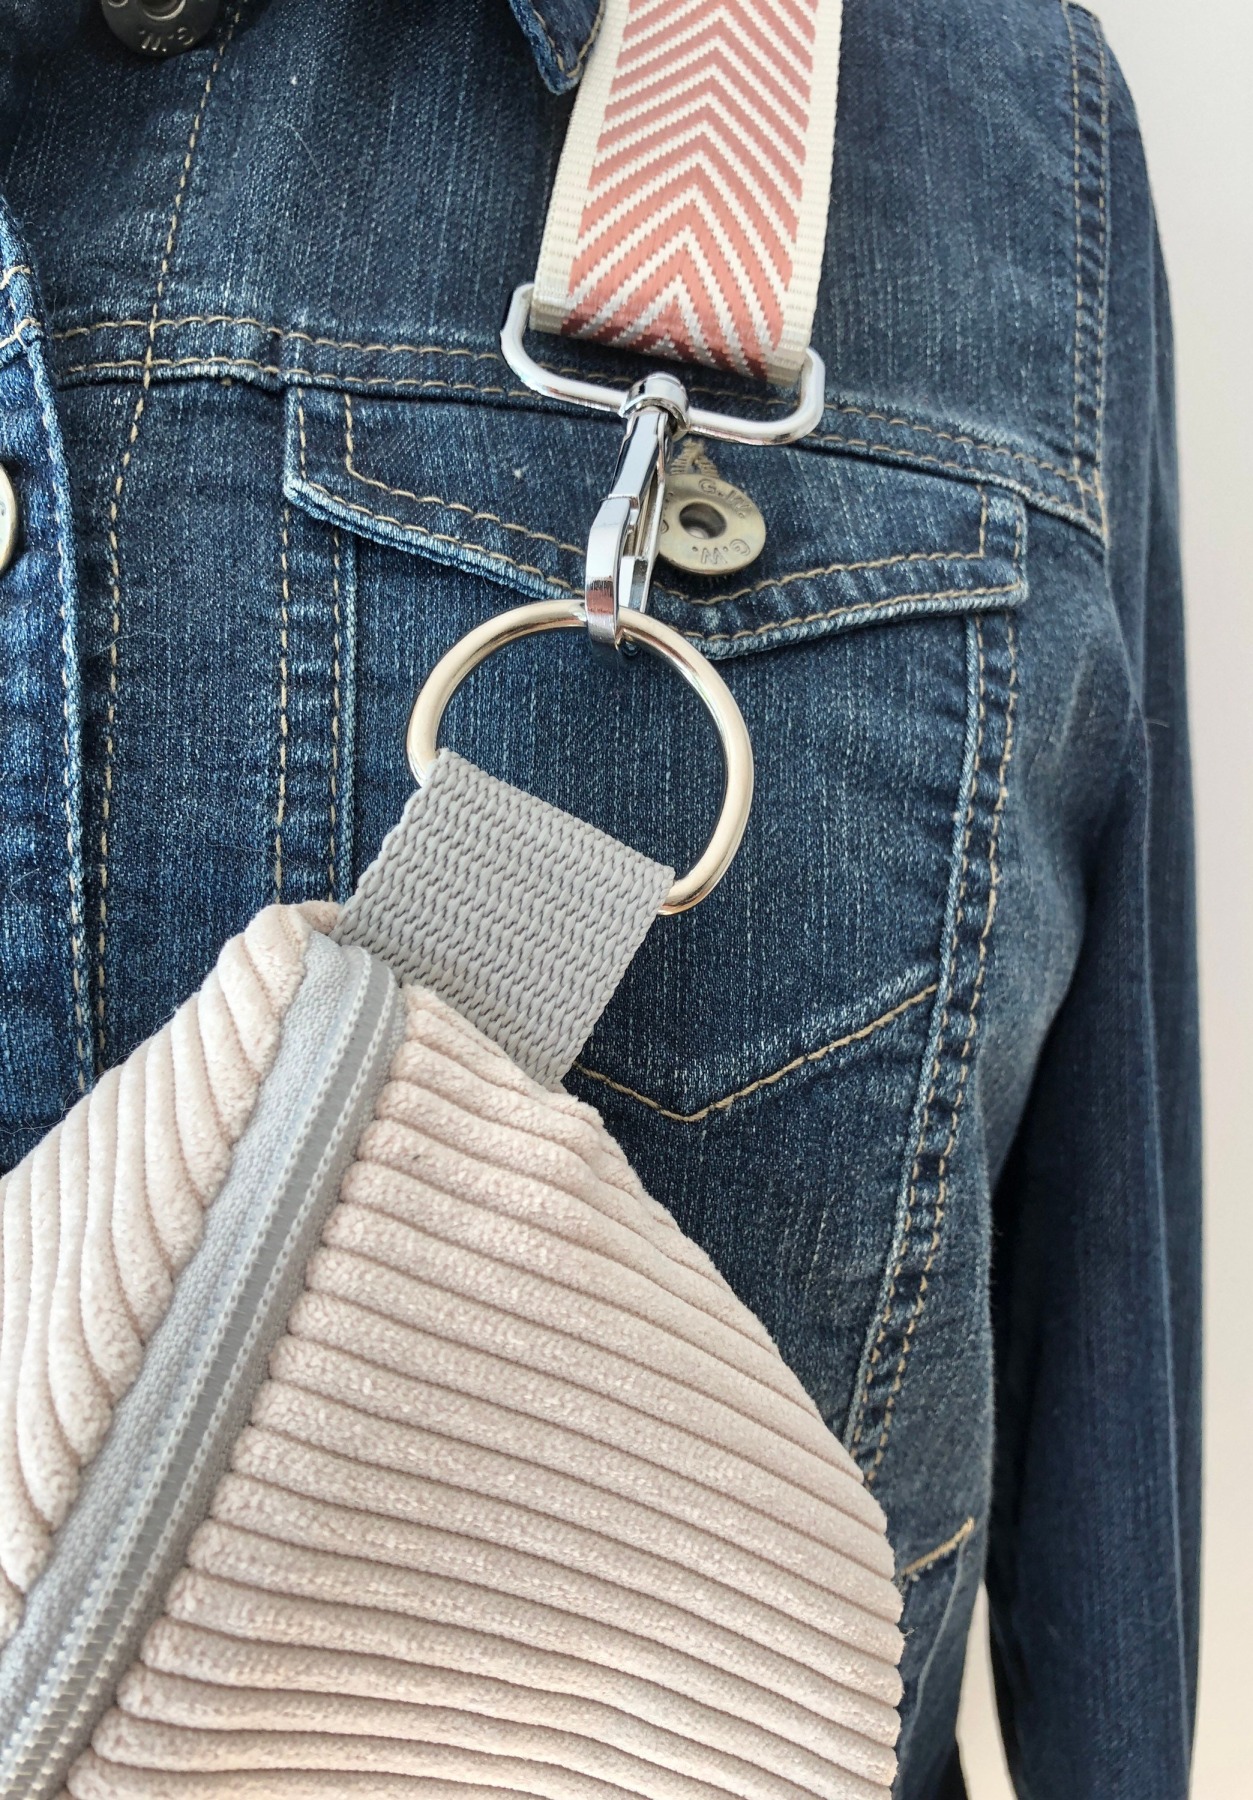 Bauchtasche / Crossbag Cord cremeweiß mit Taschengurt rosa Tasche Hipbag leicht und praktisch Kord